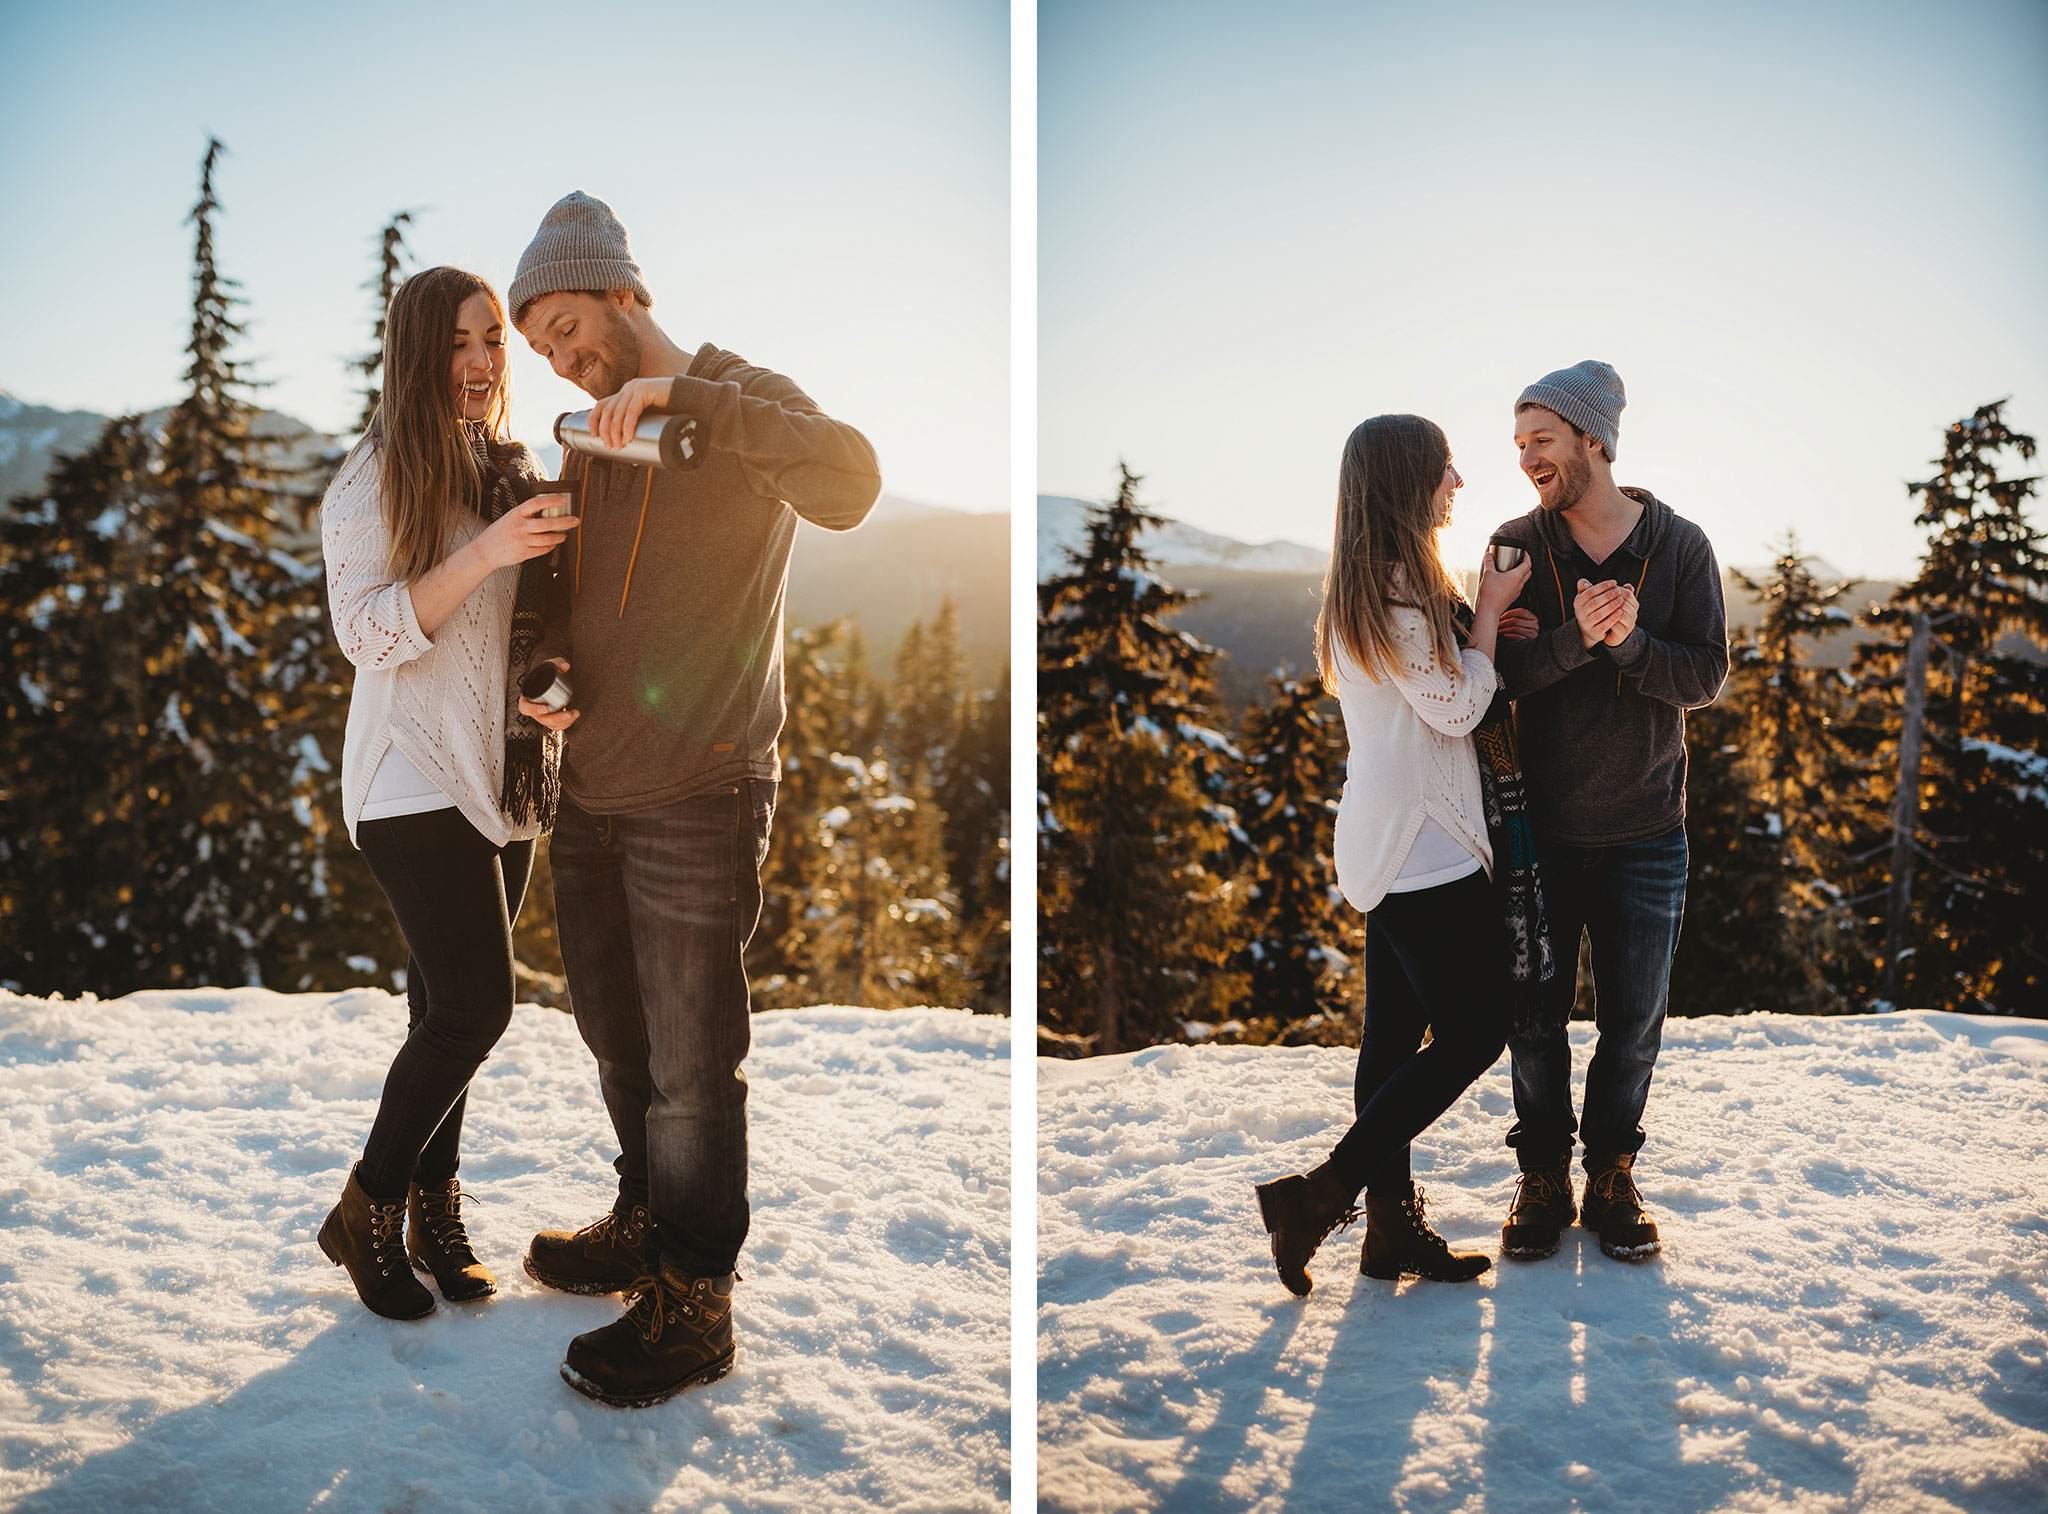 Couples engagement photography on Mount Washington at sunset.